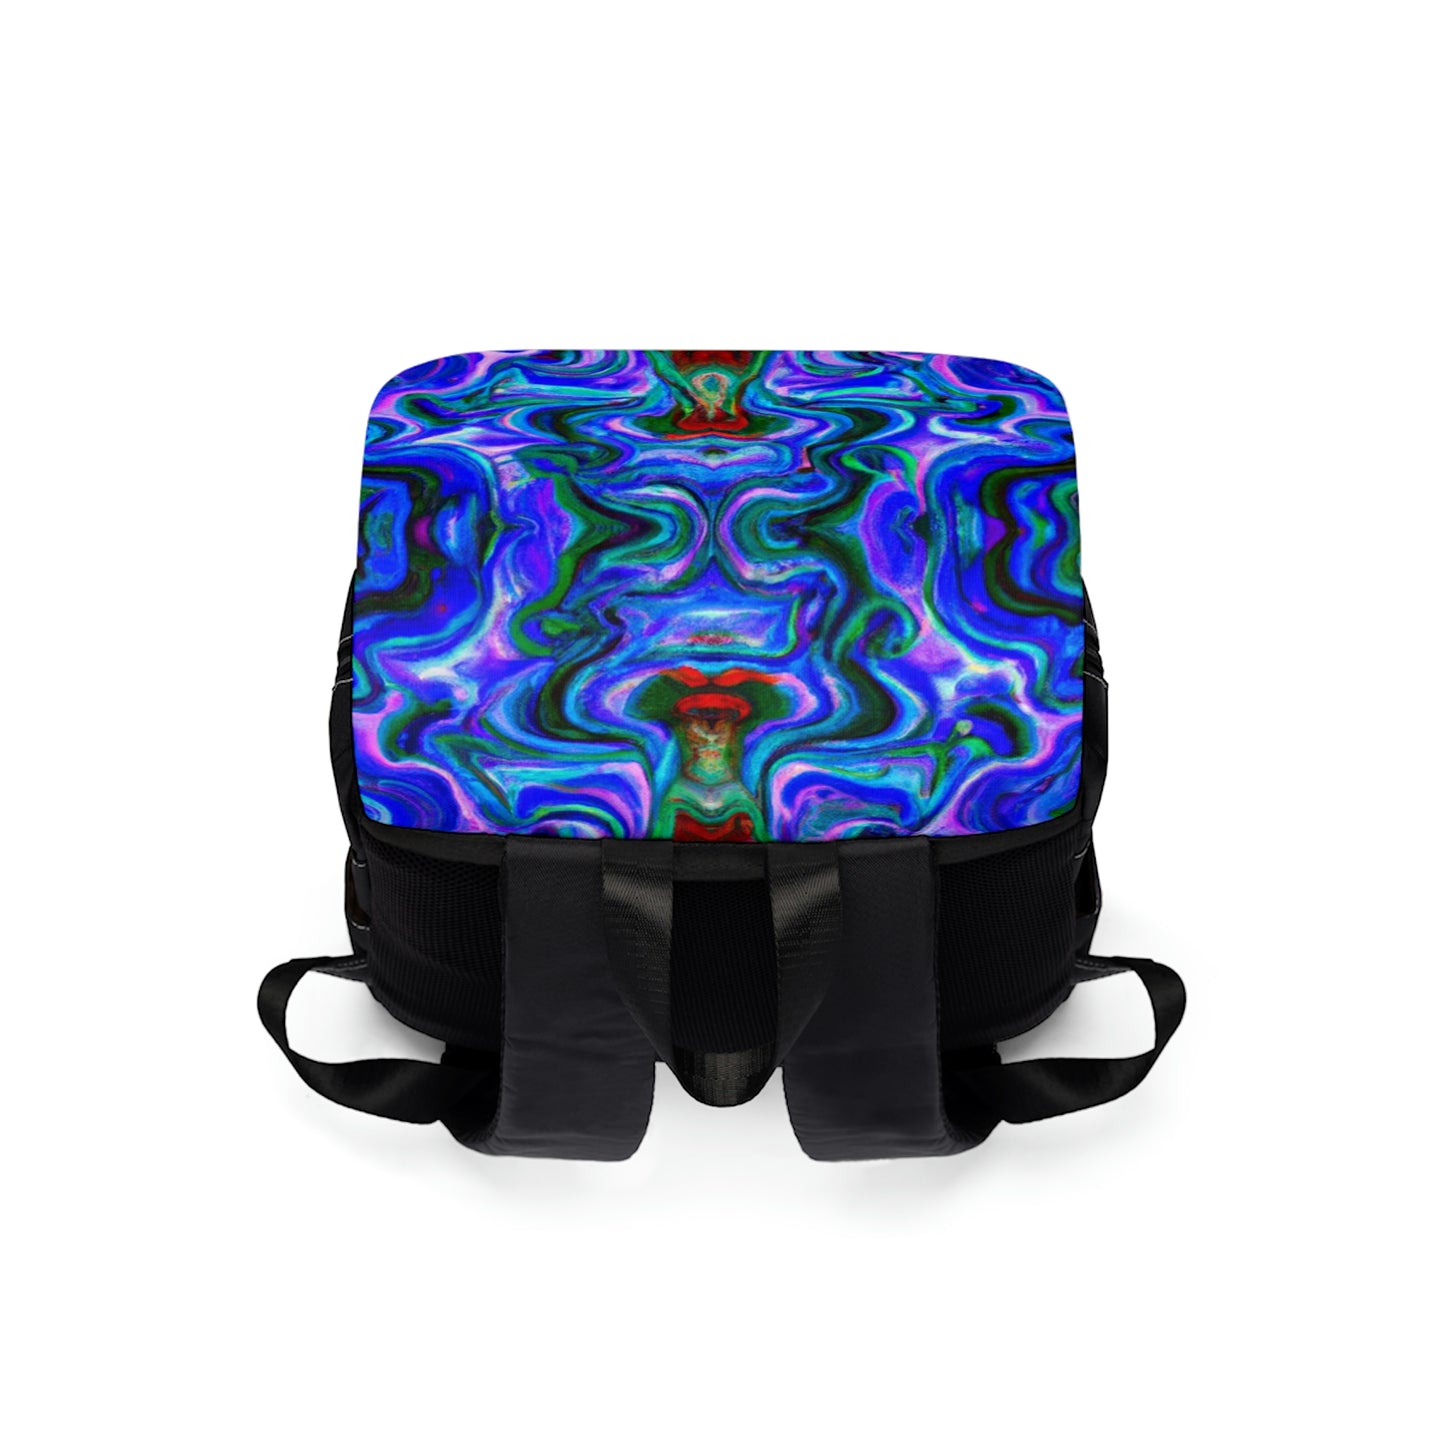 Coutenière - Psychedelic Shoulder Travel Backpack Bag